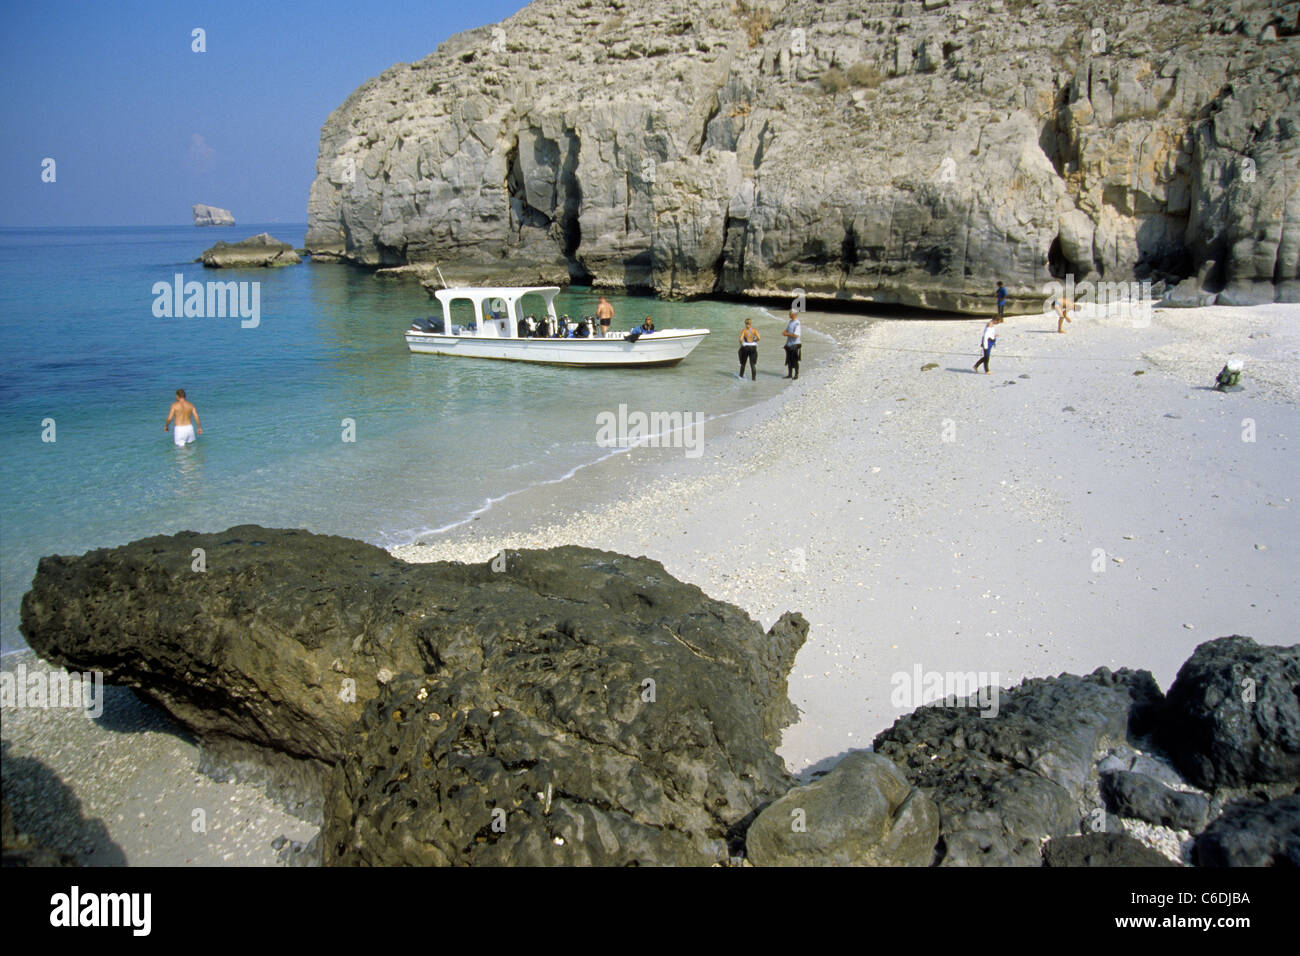 Taucher besuchen zwischen zwei Tauchgaengen eine schoene Sandbucht, Khasab,Scuba diver in a beautiful bay, Khasab Stock Photo